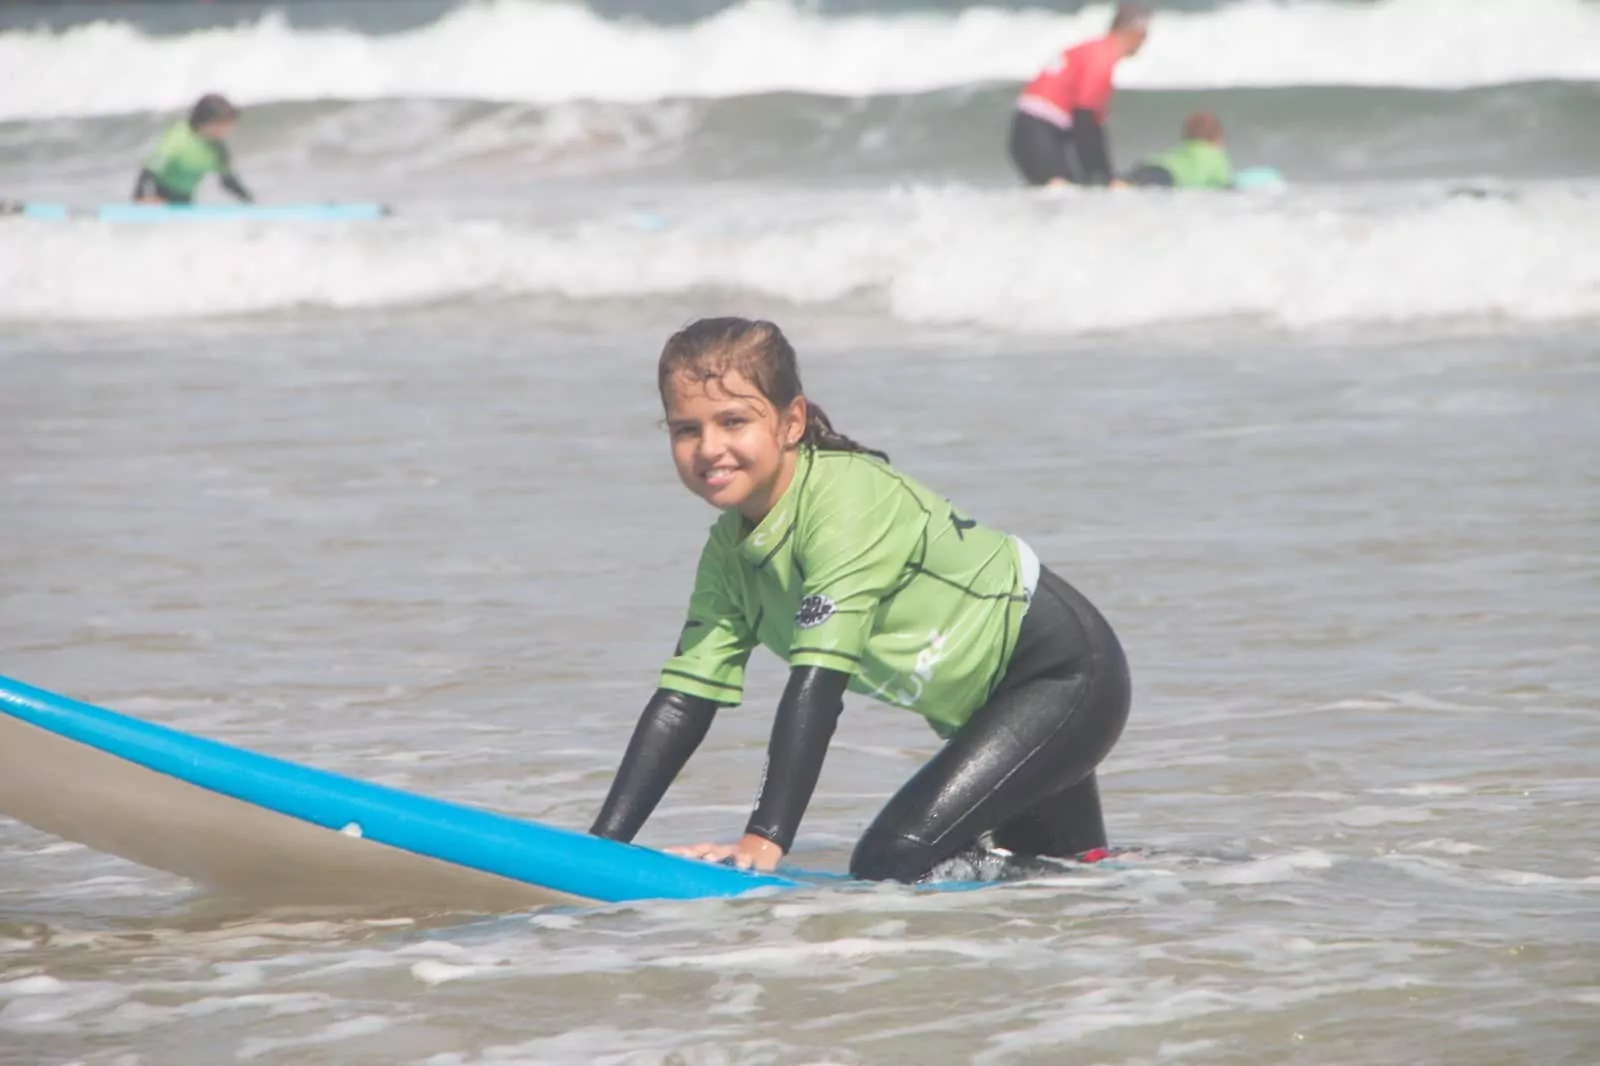 Clases de Surf en Gijon, Asturias con “Tablas Surf School”